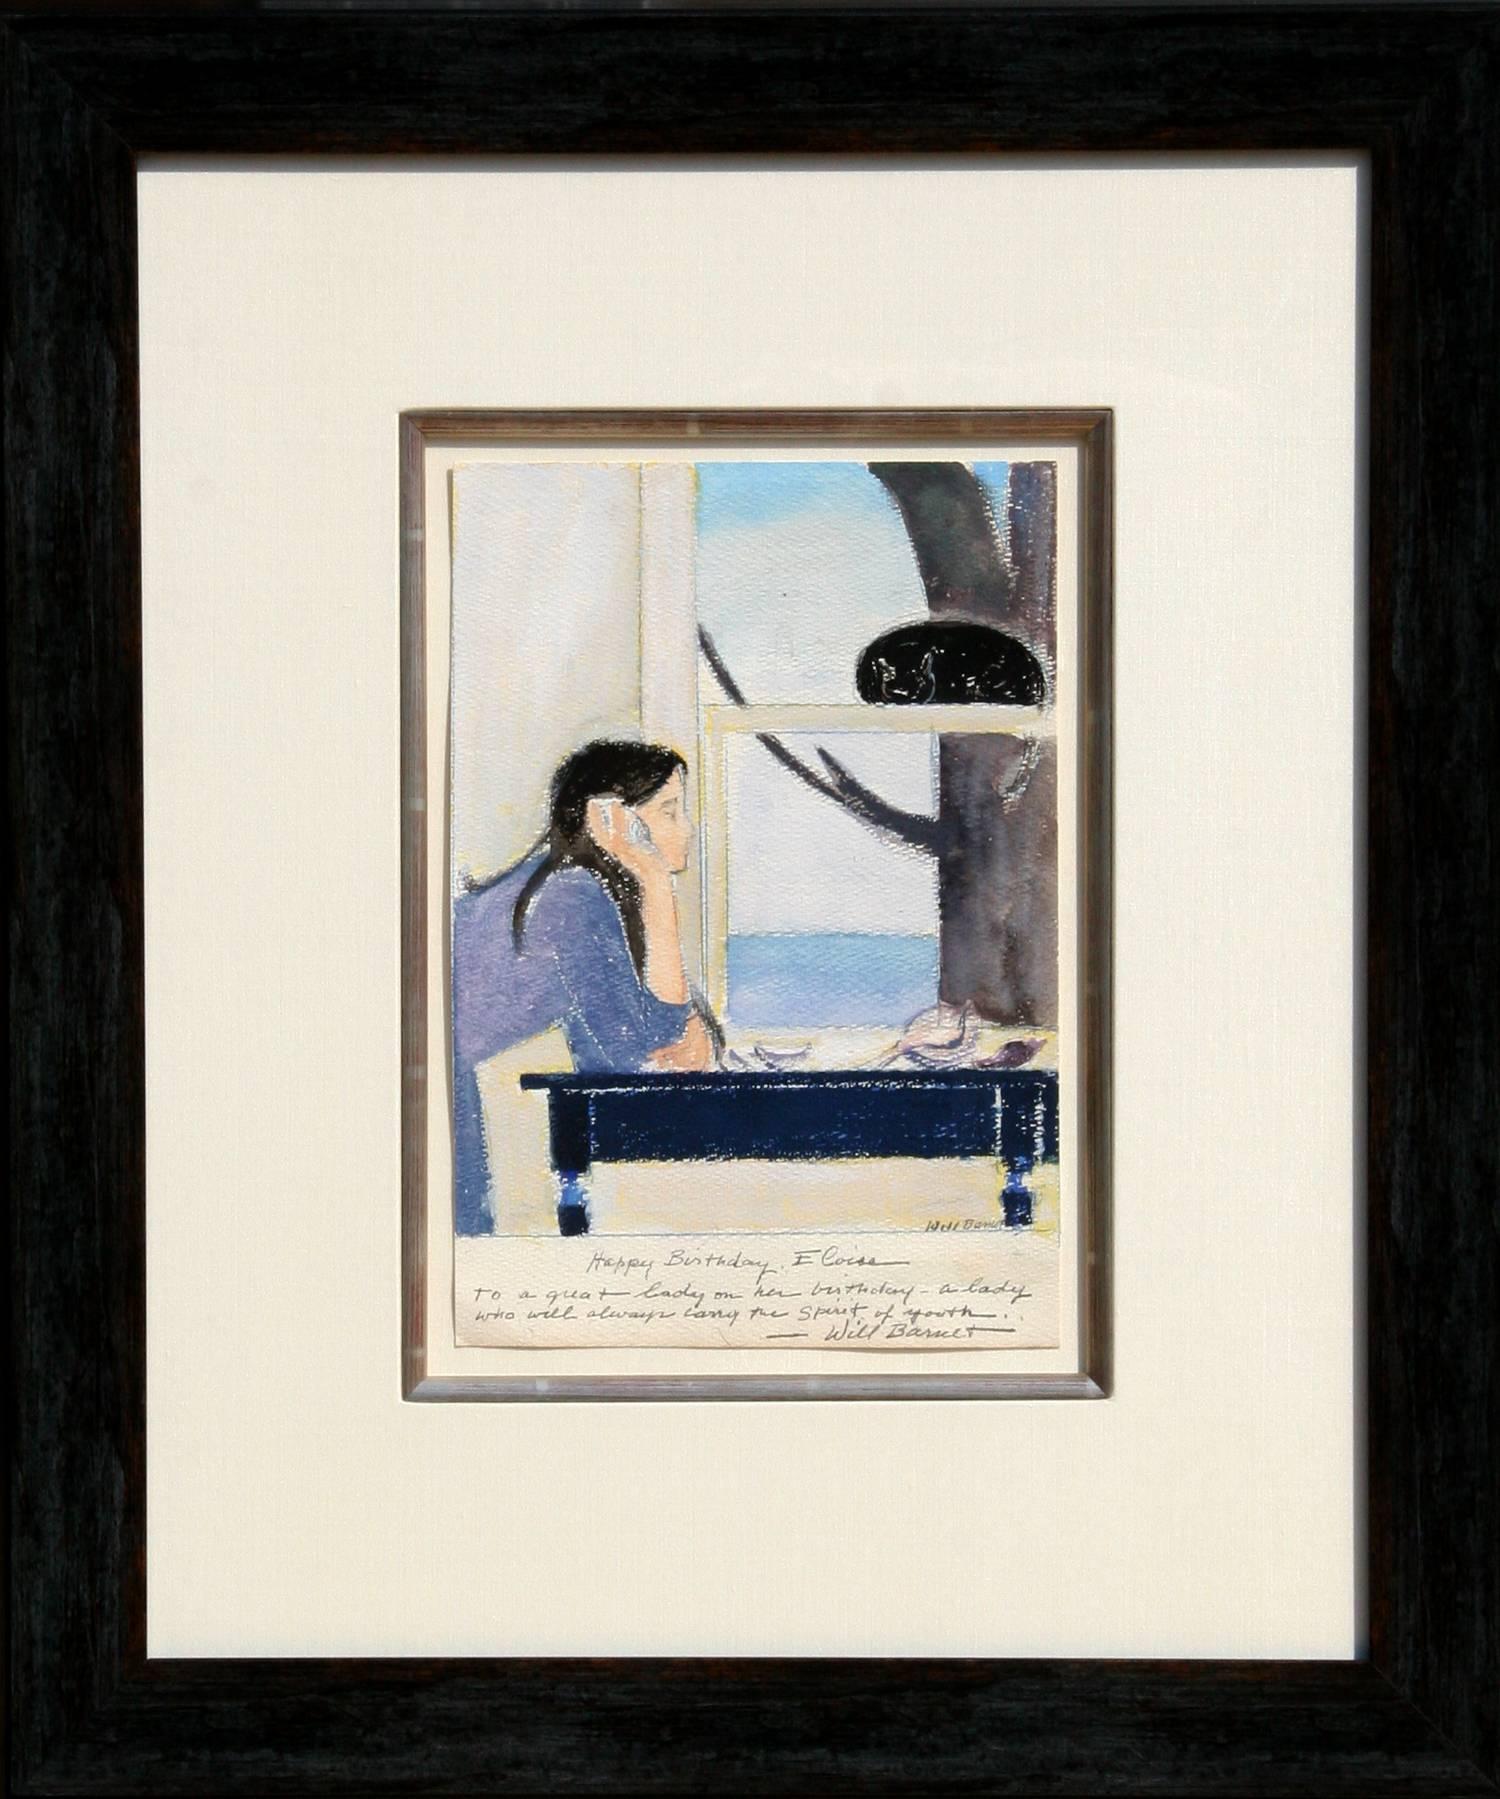 Artiste : Will Barnet, américain (1911 - 2012)
Titre : L'esprit de la jeunesse
Année : vers 1980
Médium : Aquarelle et pastel sur papier, signé et dédicacé
Taille : 11 in. x 7.5 in. (27,94 cm x 19,05 cm)
Taille du cadre : 23 x 19 pouces 